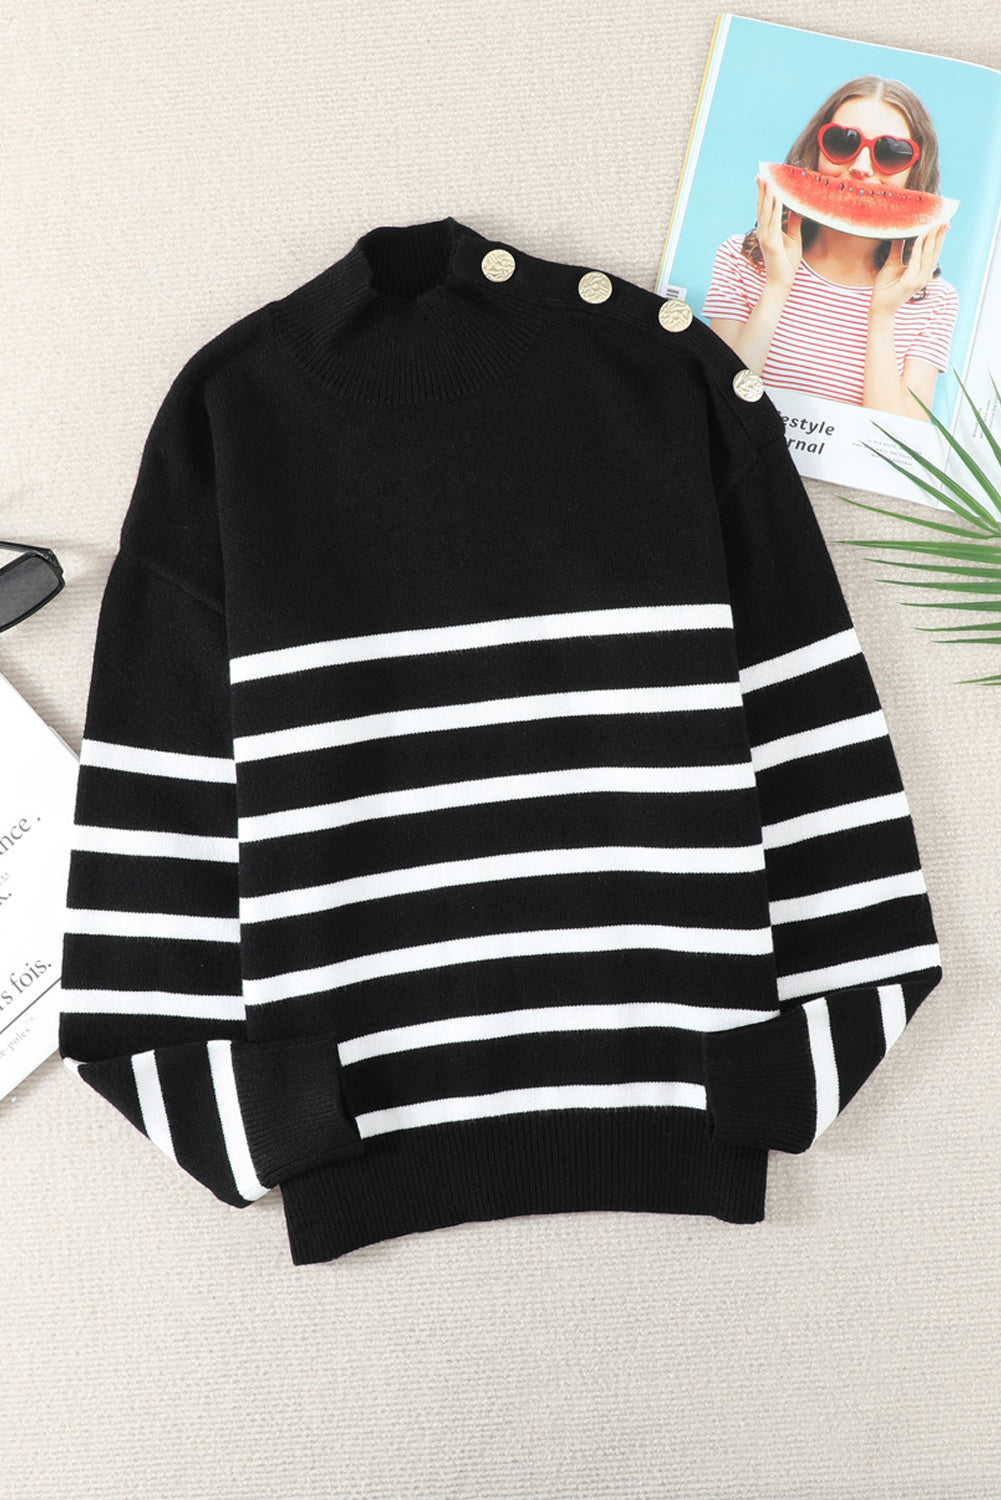 Winter Black Striped Turtleneck Long Sleeve Sweater